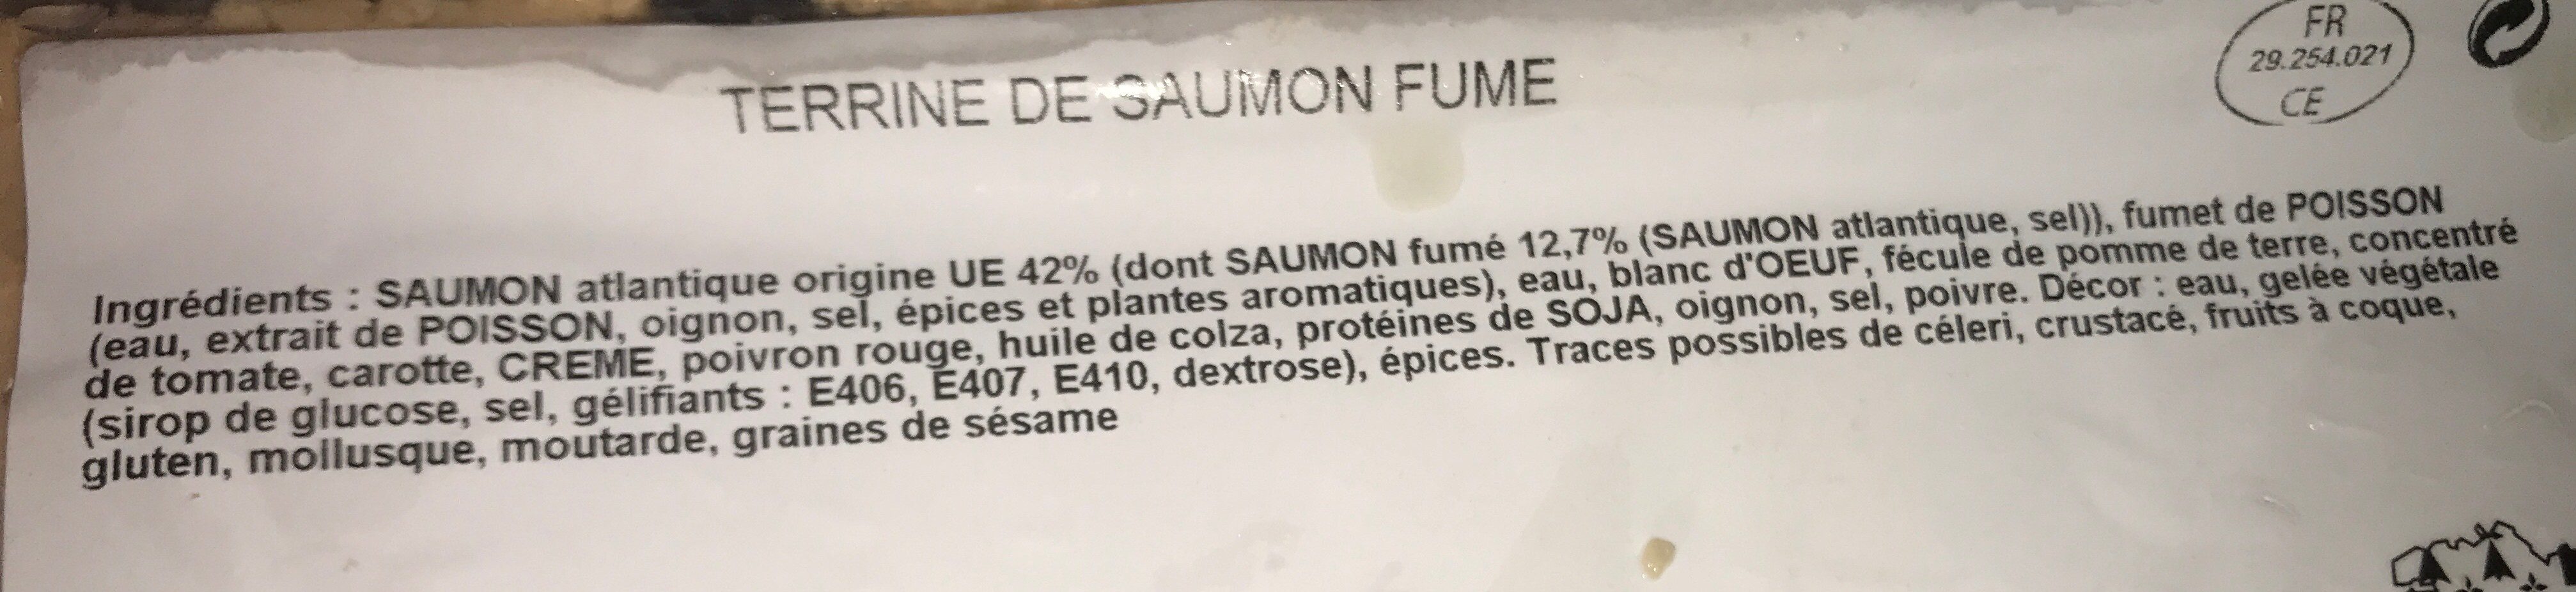 Terrine de saumon - Ingrédients